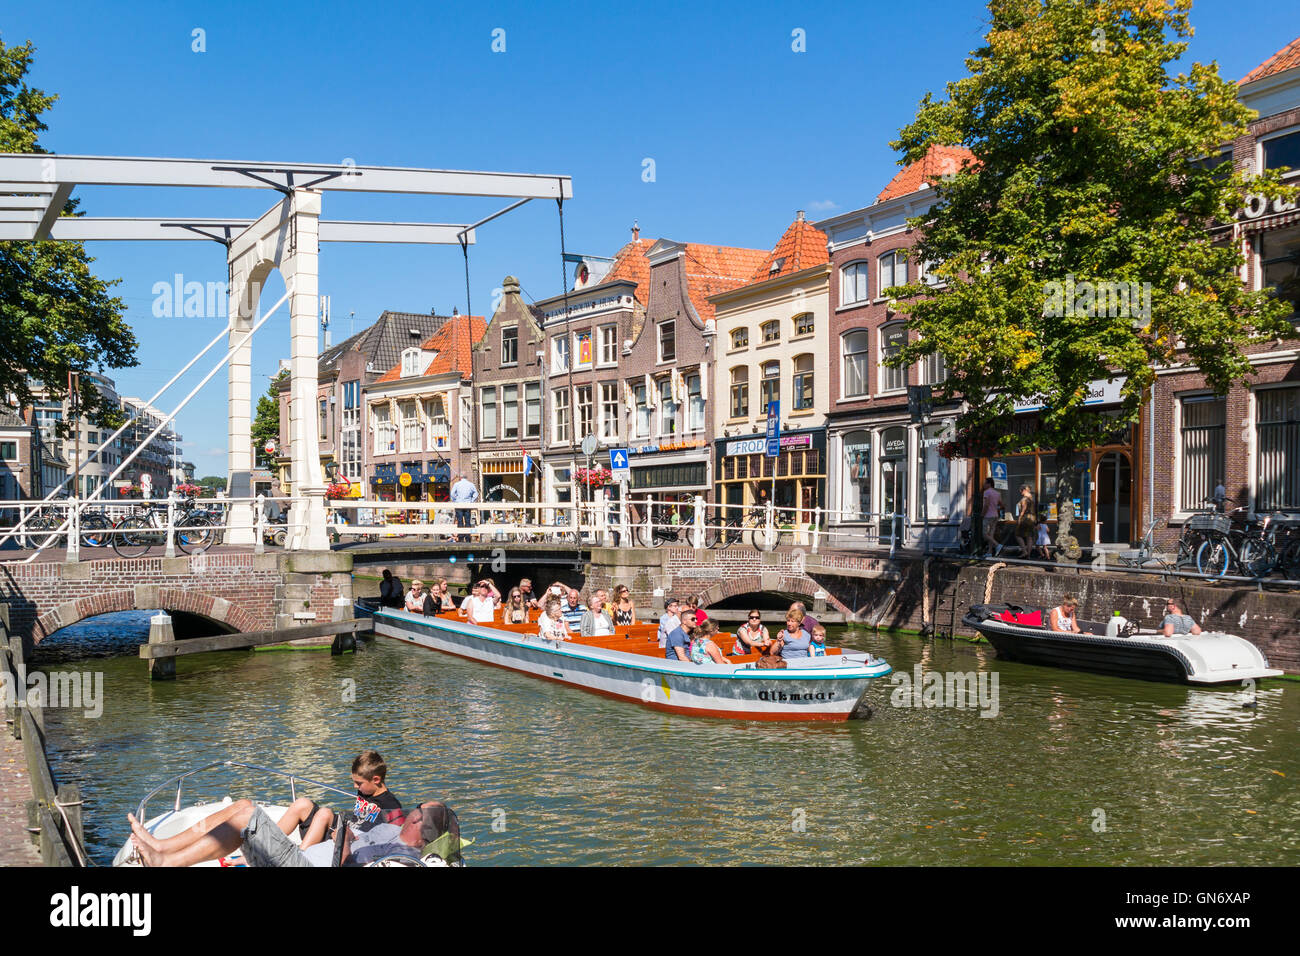 Touristen auf Sightseeing-Boot und Schapenbrug Zugbrücke am Voordam-Kanal in Alkmaar, Niederlande Stockfoto